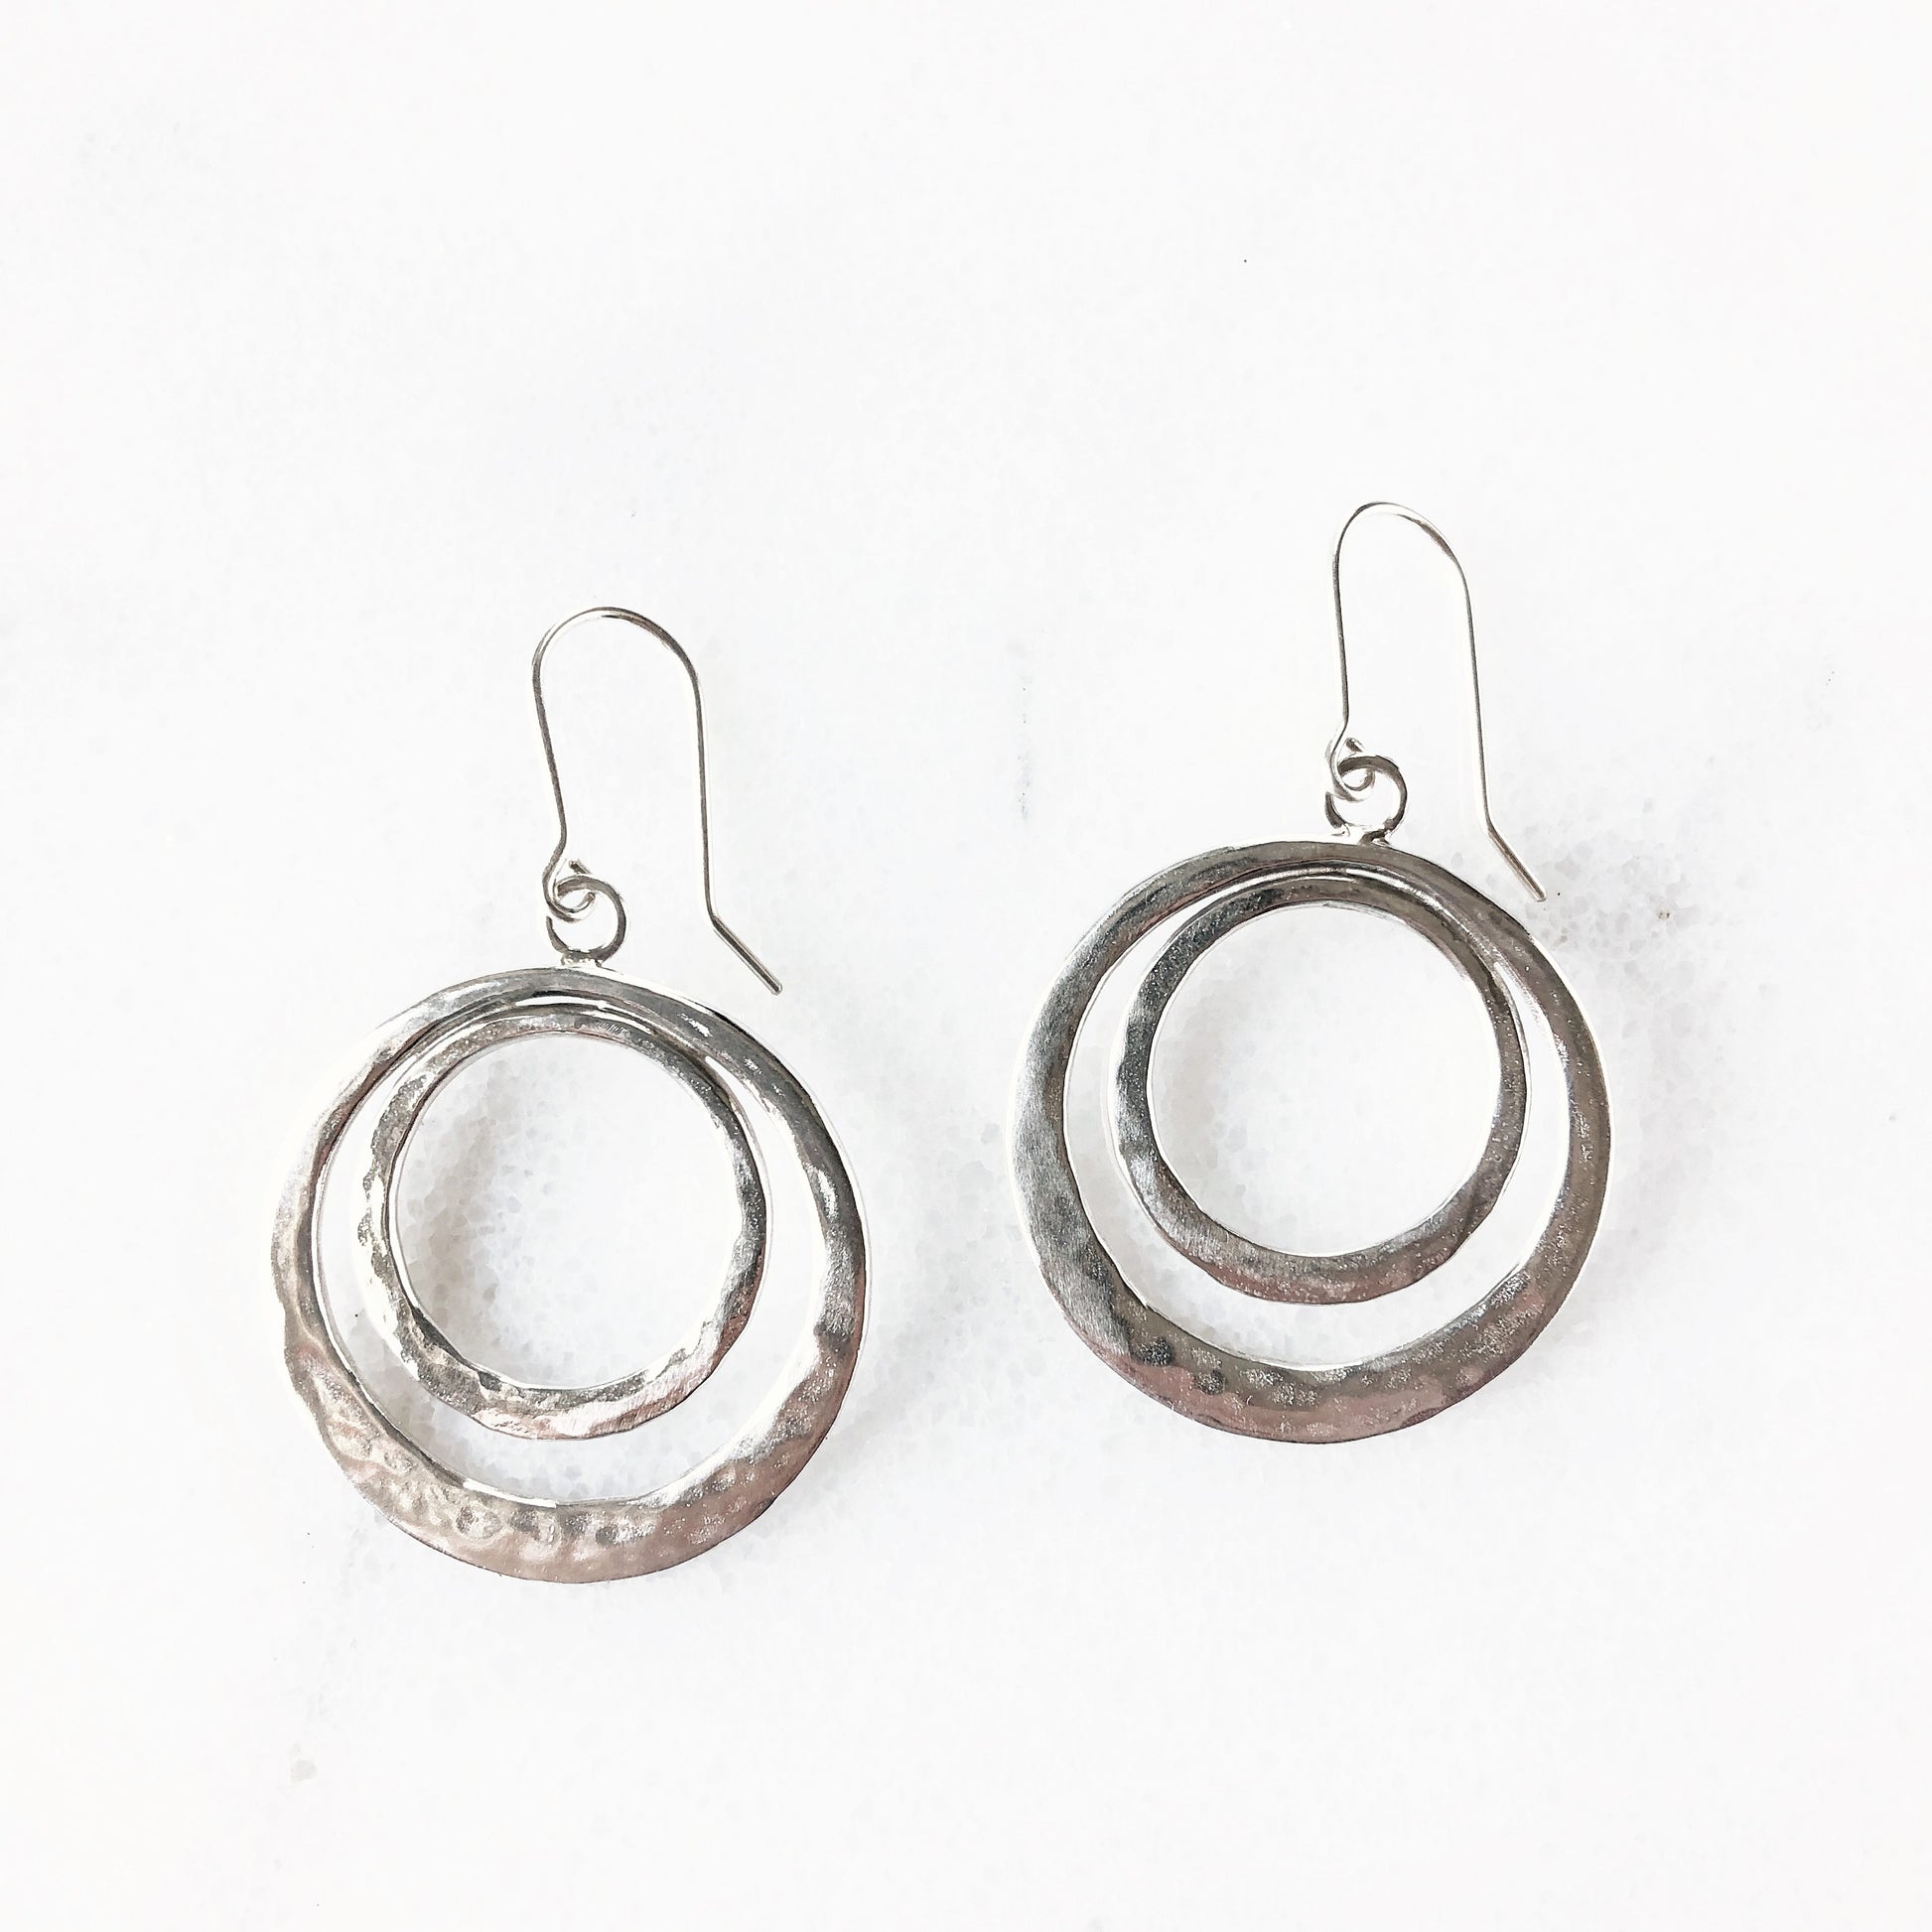 Bohemian silver double hoop earrings